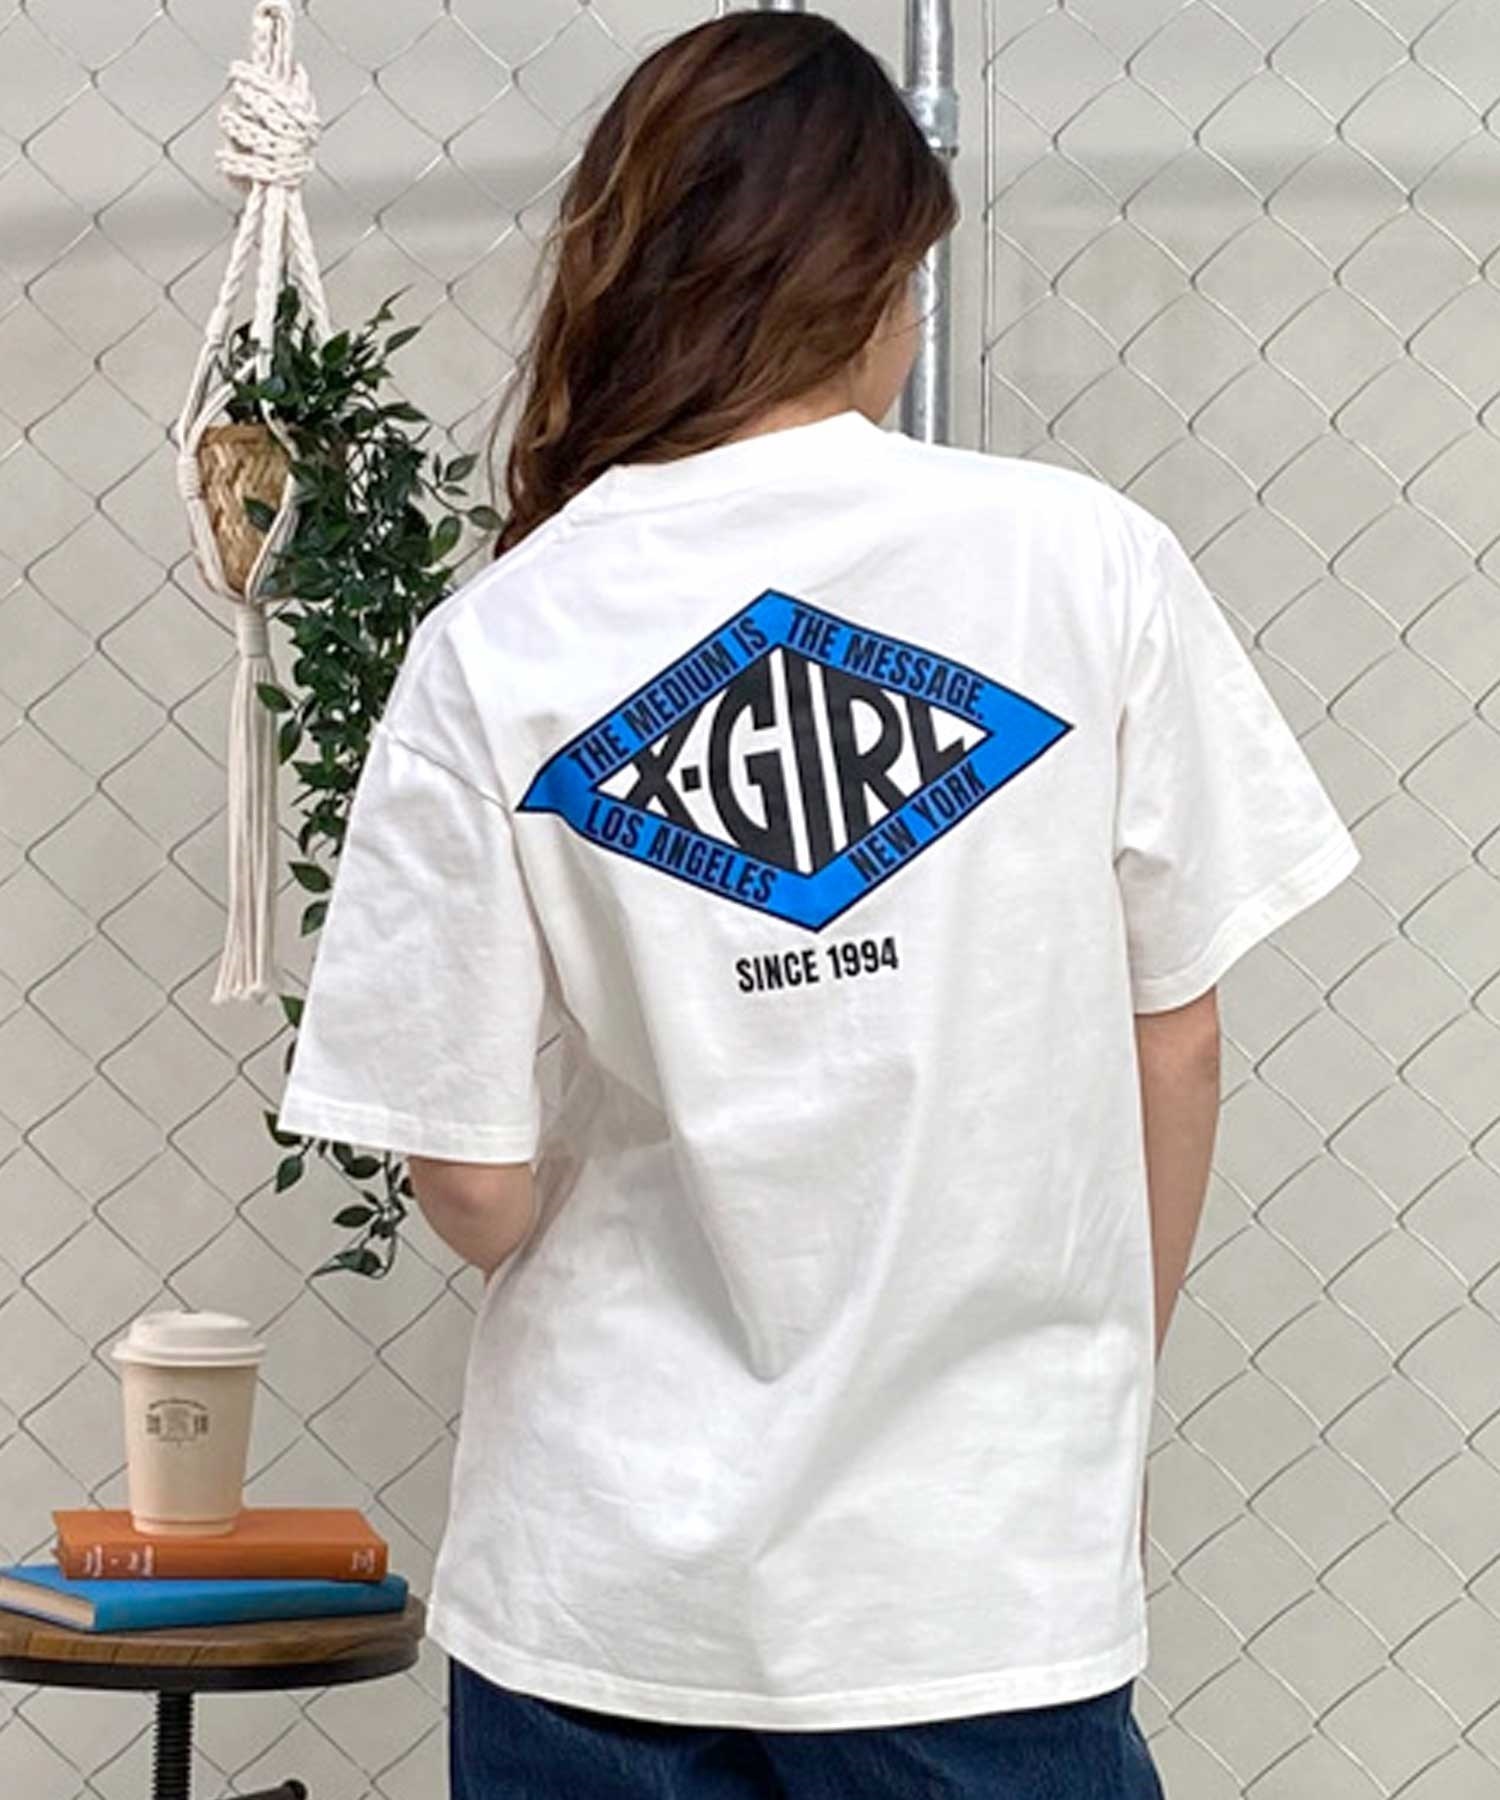 【マトメガイ対象】X-girl/エックスガール DIAMOND LOGO SS TEE 105242011038 レディース  Tシャツ ムラサキスポーツ限定(BLUE-M)